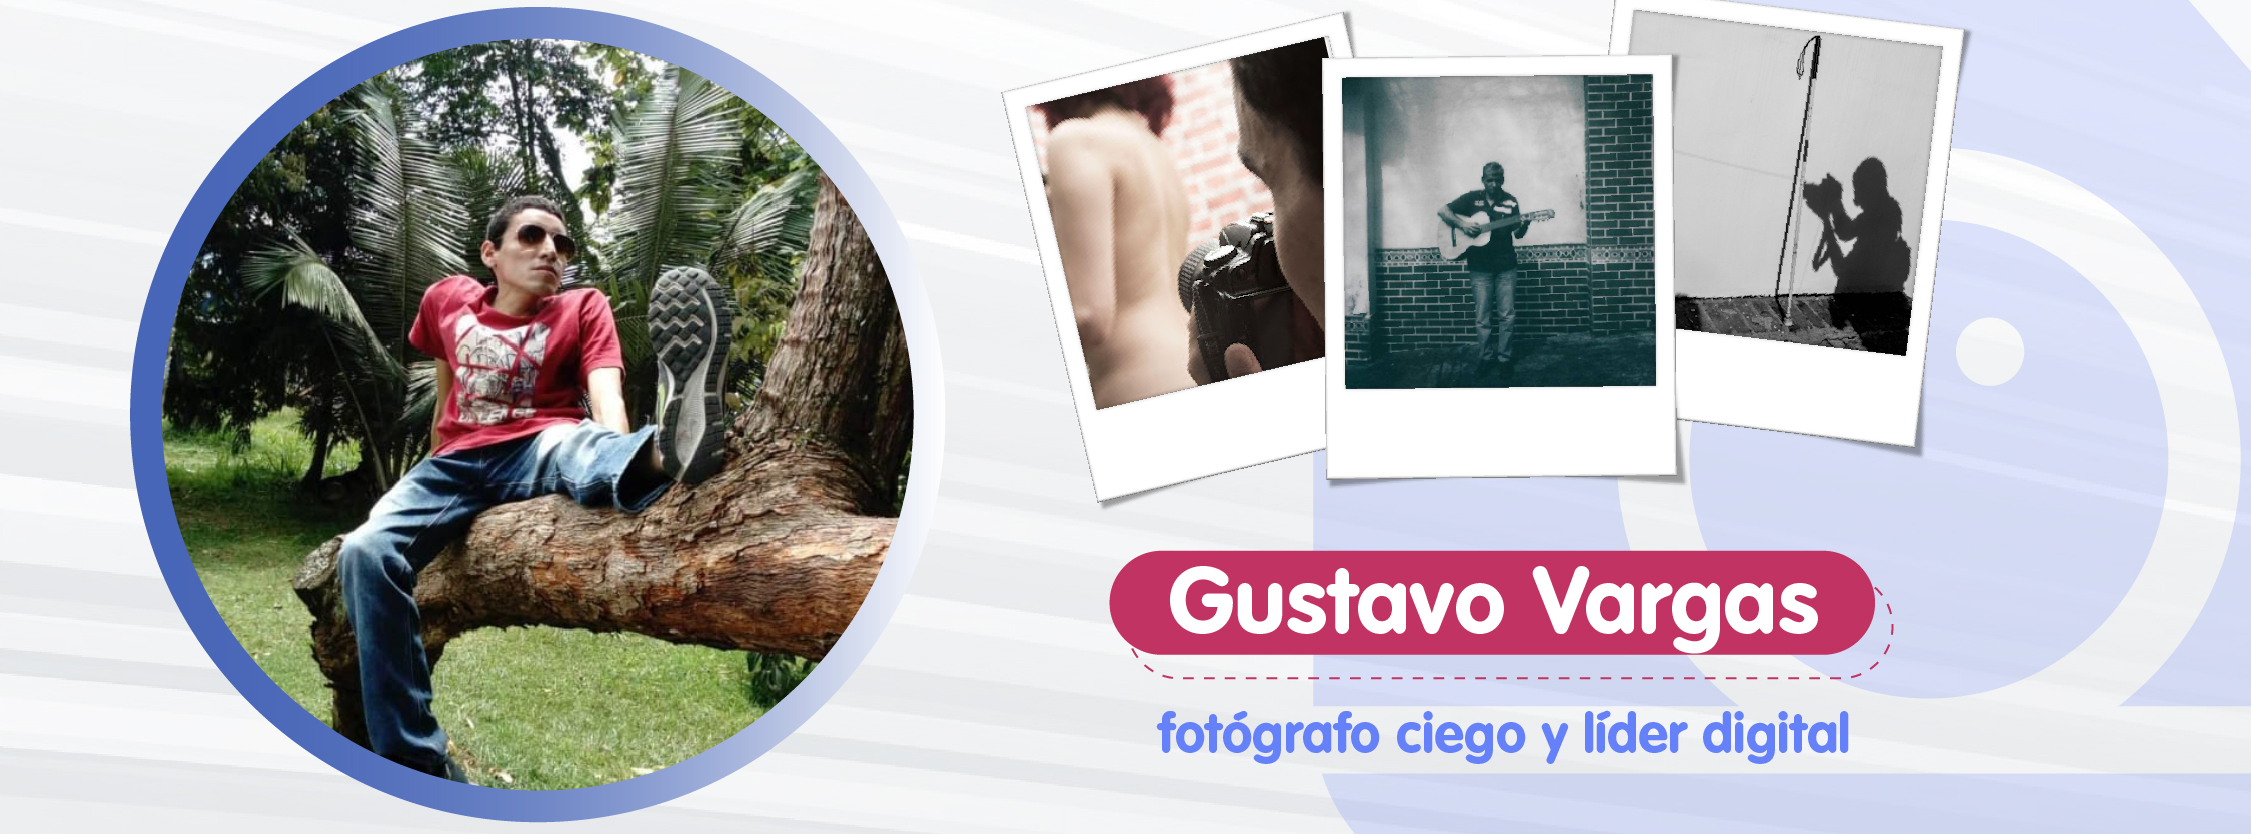 Gustavo Vargas, el fotógrafo ciego y líder digital